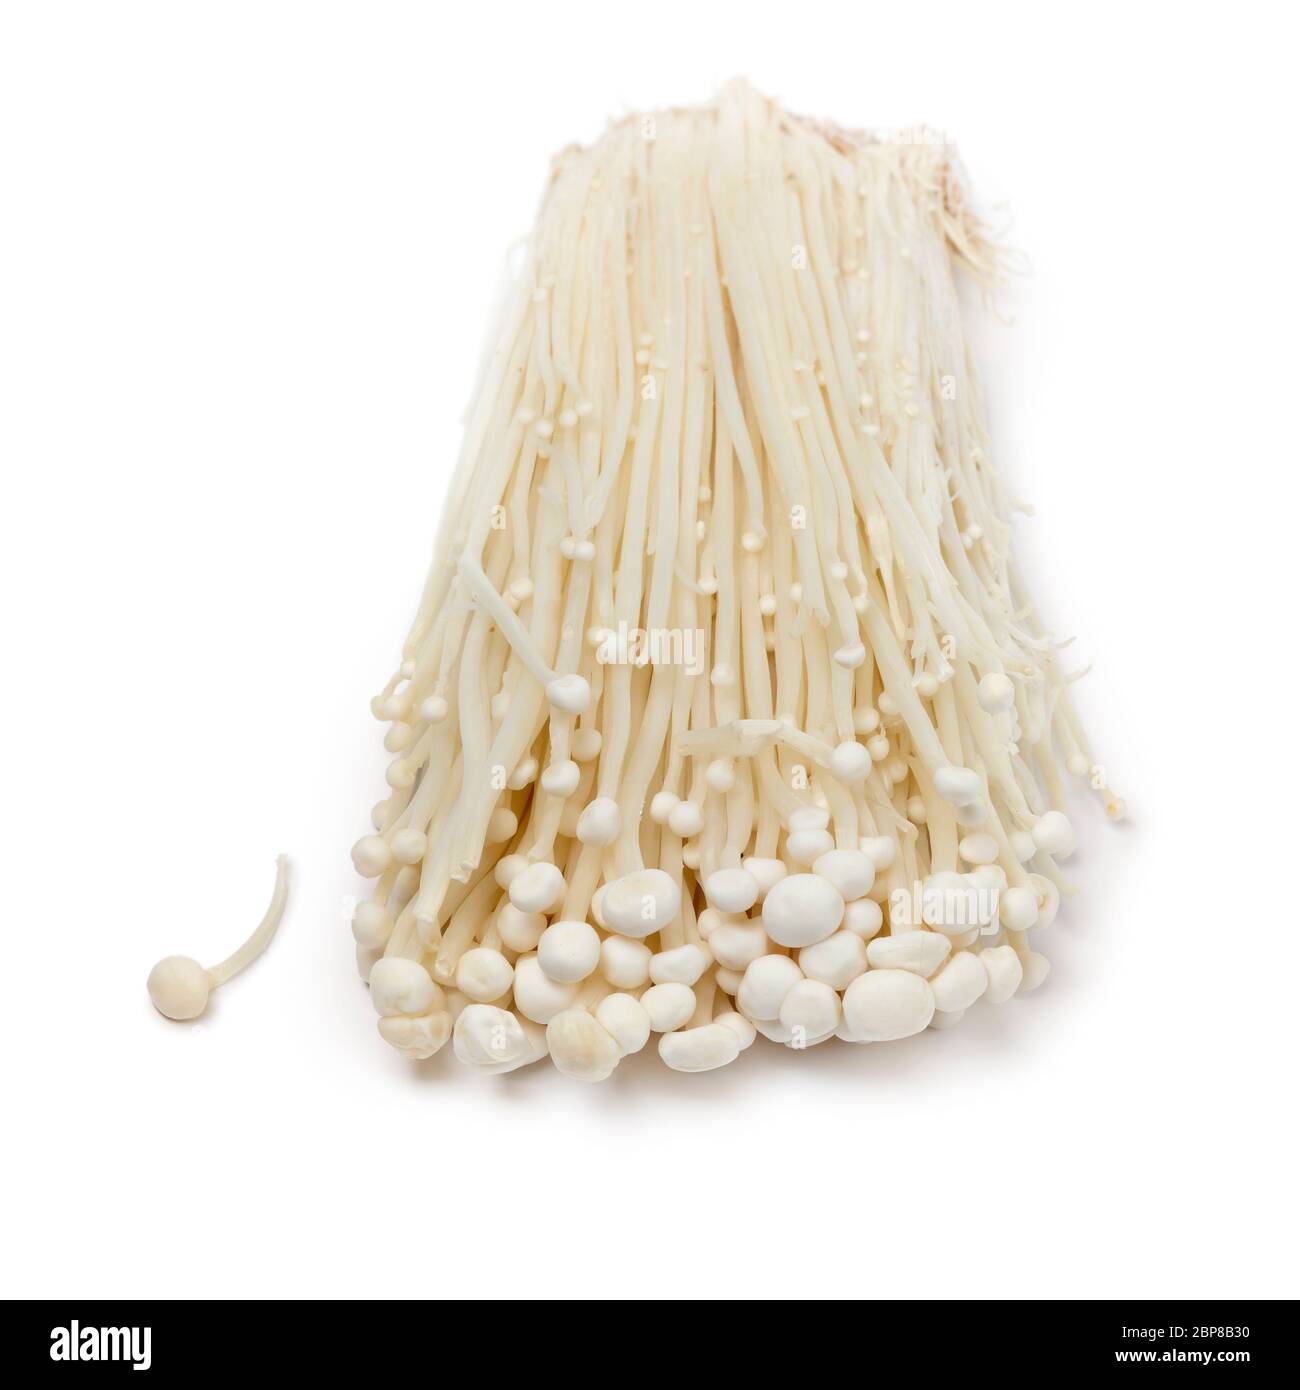 Groupe de champignons enokii blancs frais cultivés, isolés sur fond blanc Banque D'Images